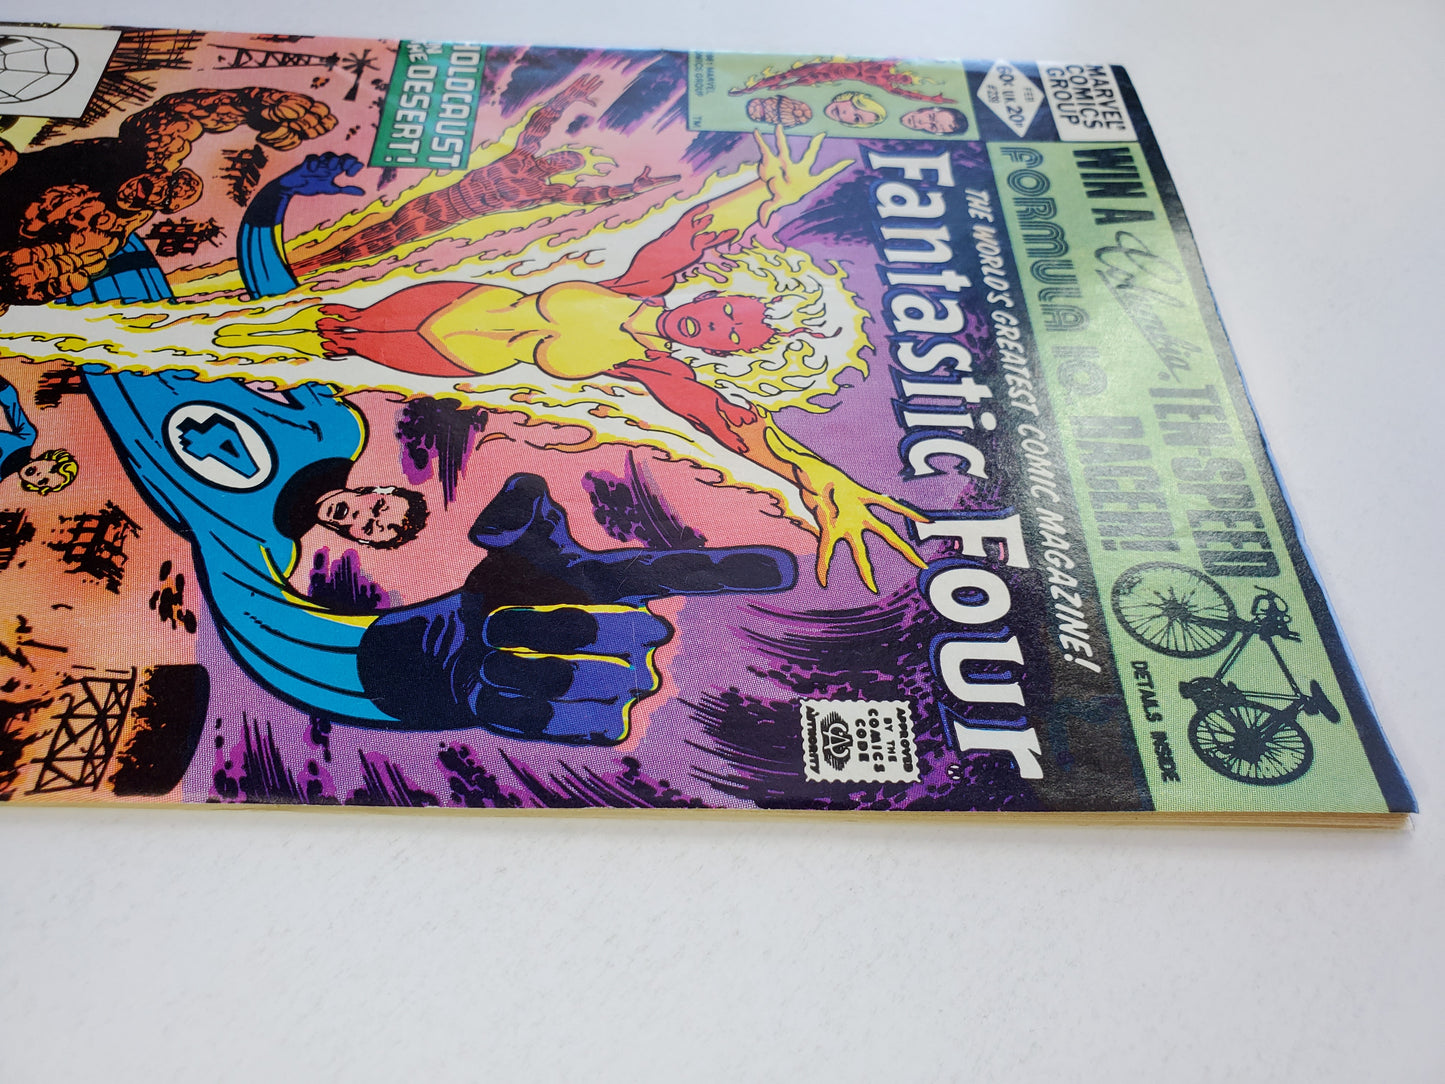 Marvel Fantastic Four Vol 1 #239 DE Key ACC